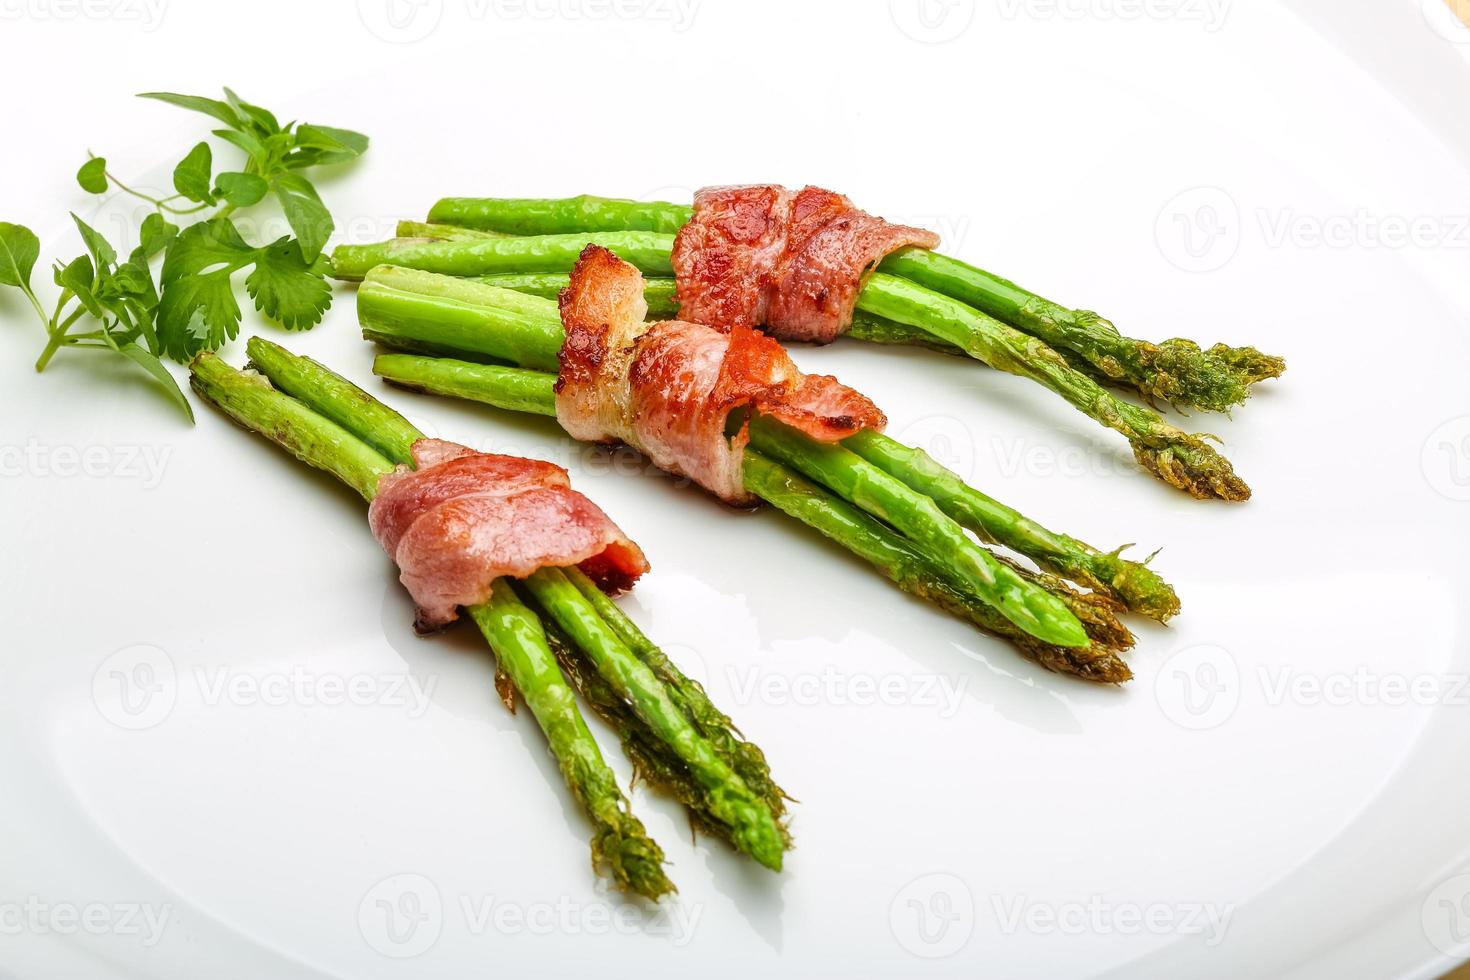 asparagi grigliati con pancetta foto